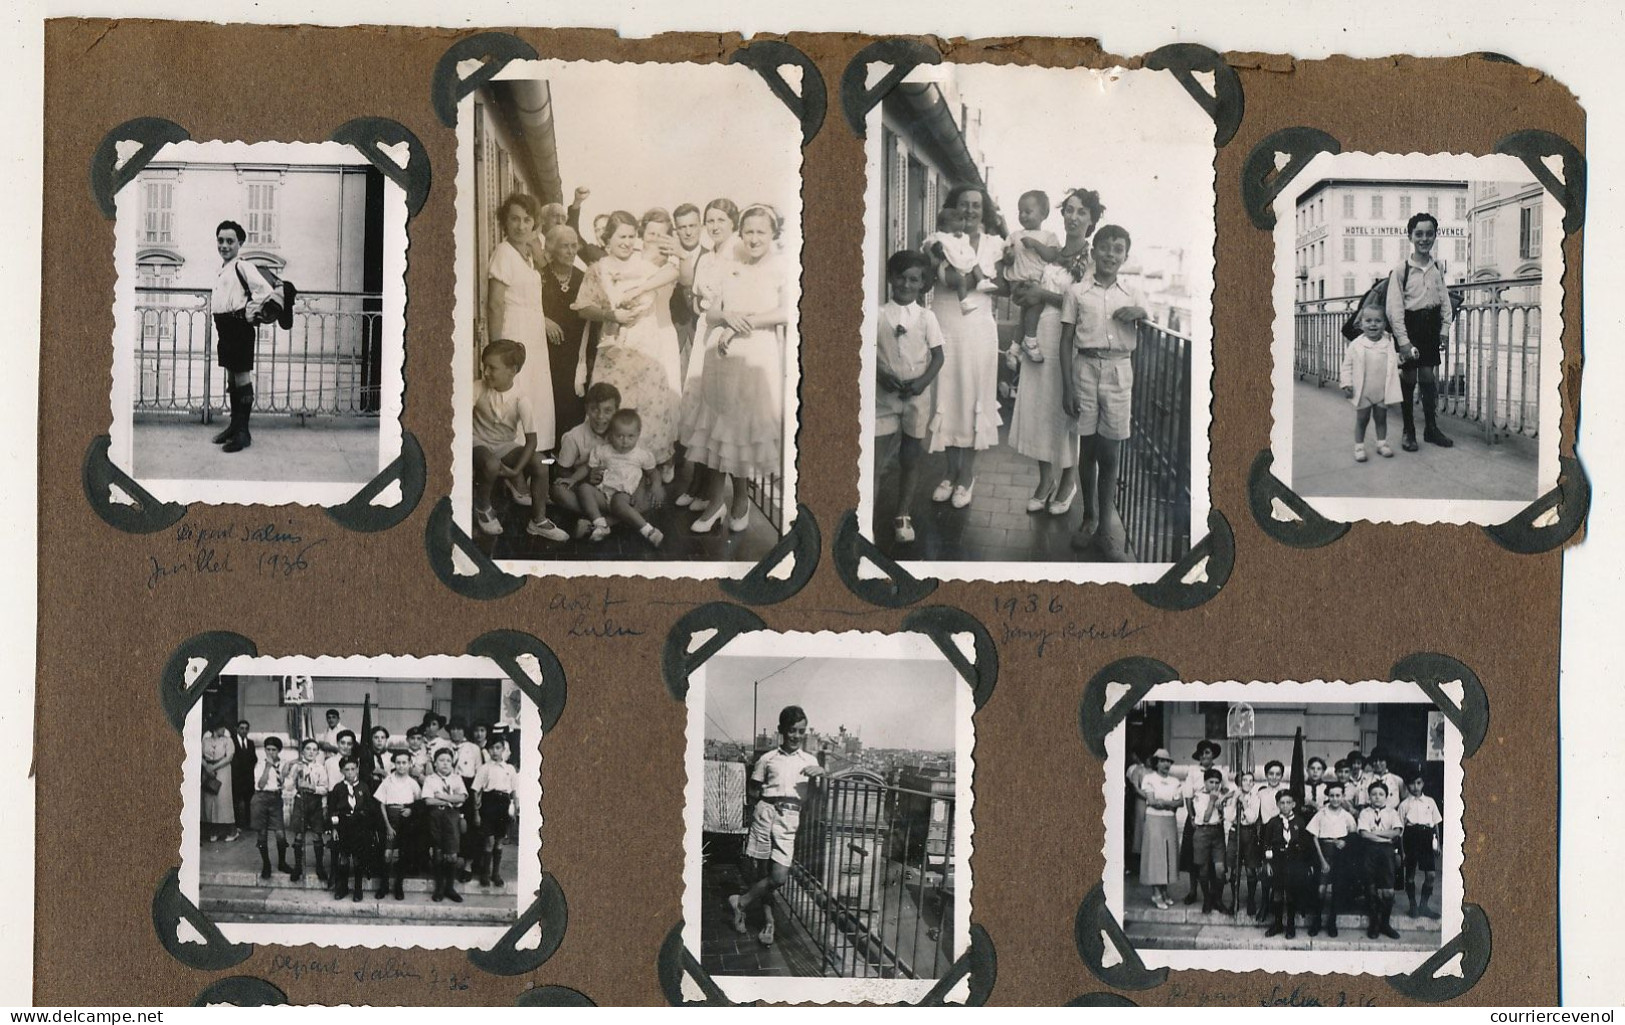 FRANCE - SCOUTISME - 6 pages Recto Verso de petites photos dont une quinzaine d'un Louveteau - 1936